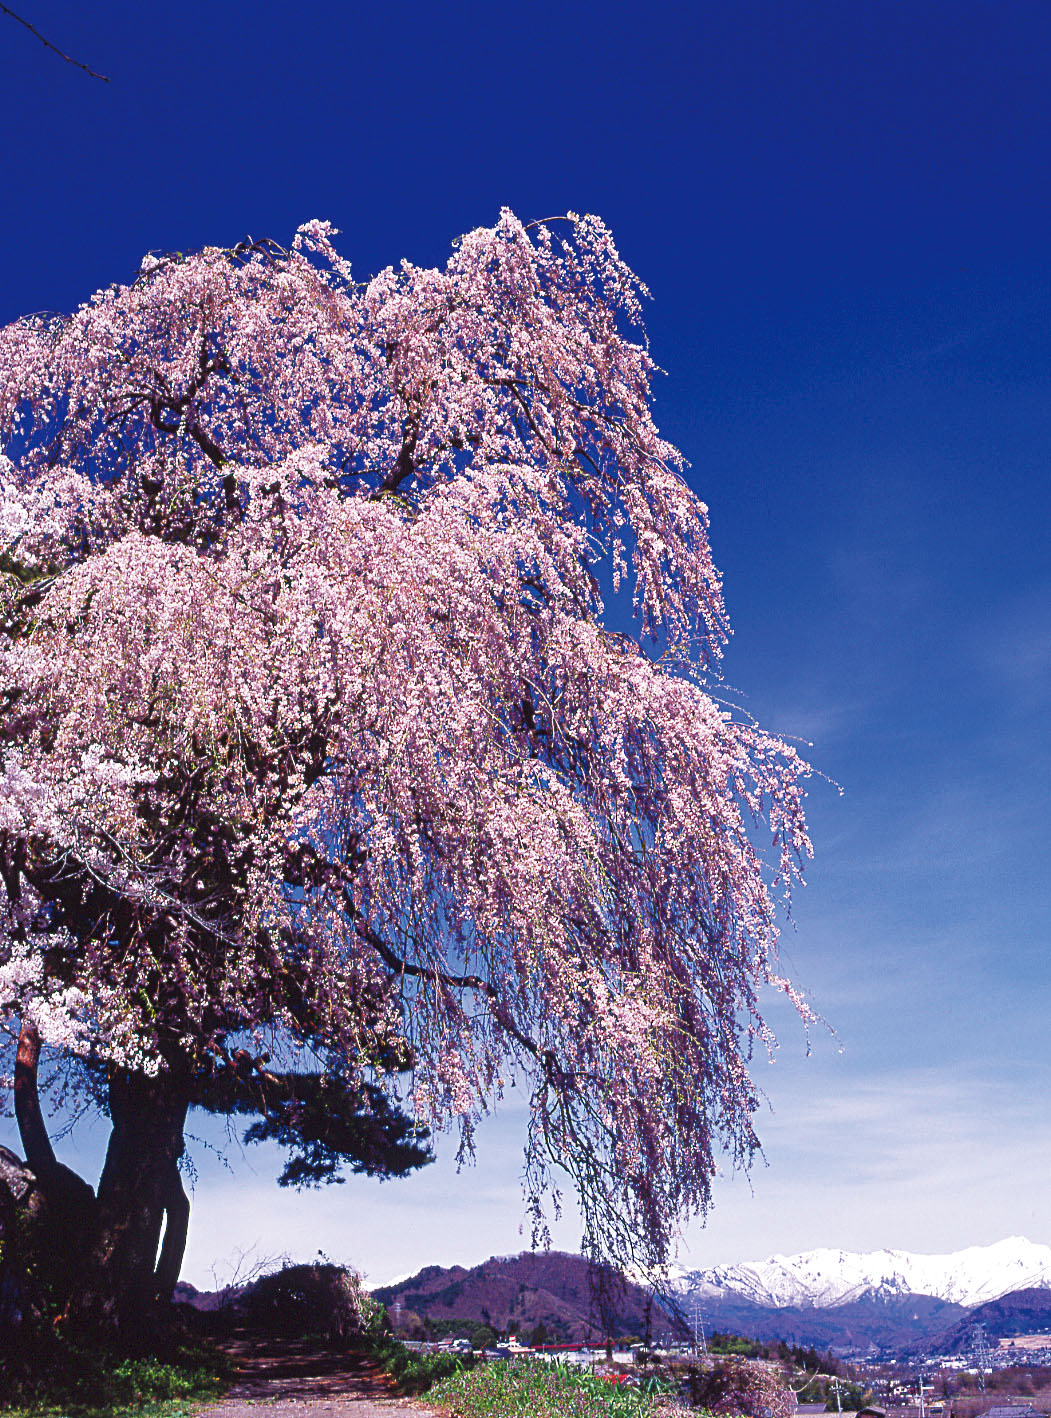 桜越しに望む残雪の山々も美しい下川田のシダレザクラ